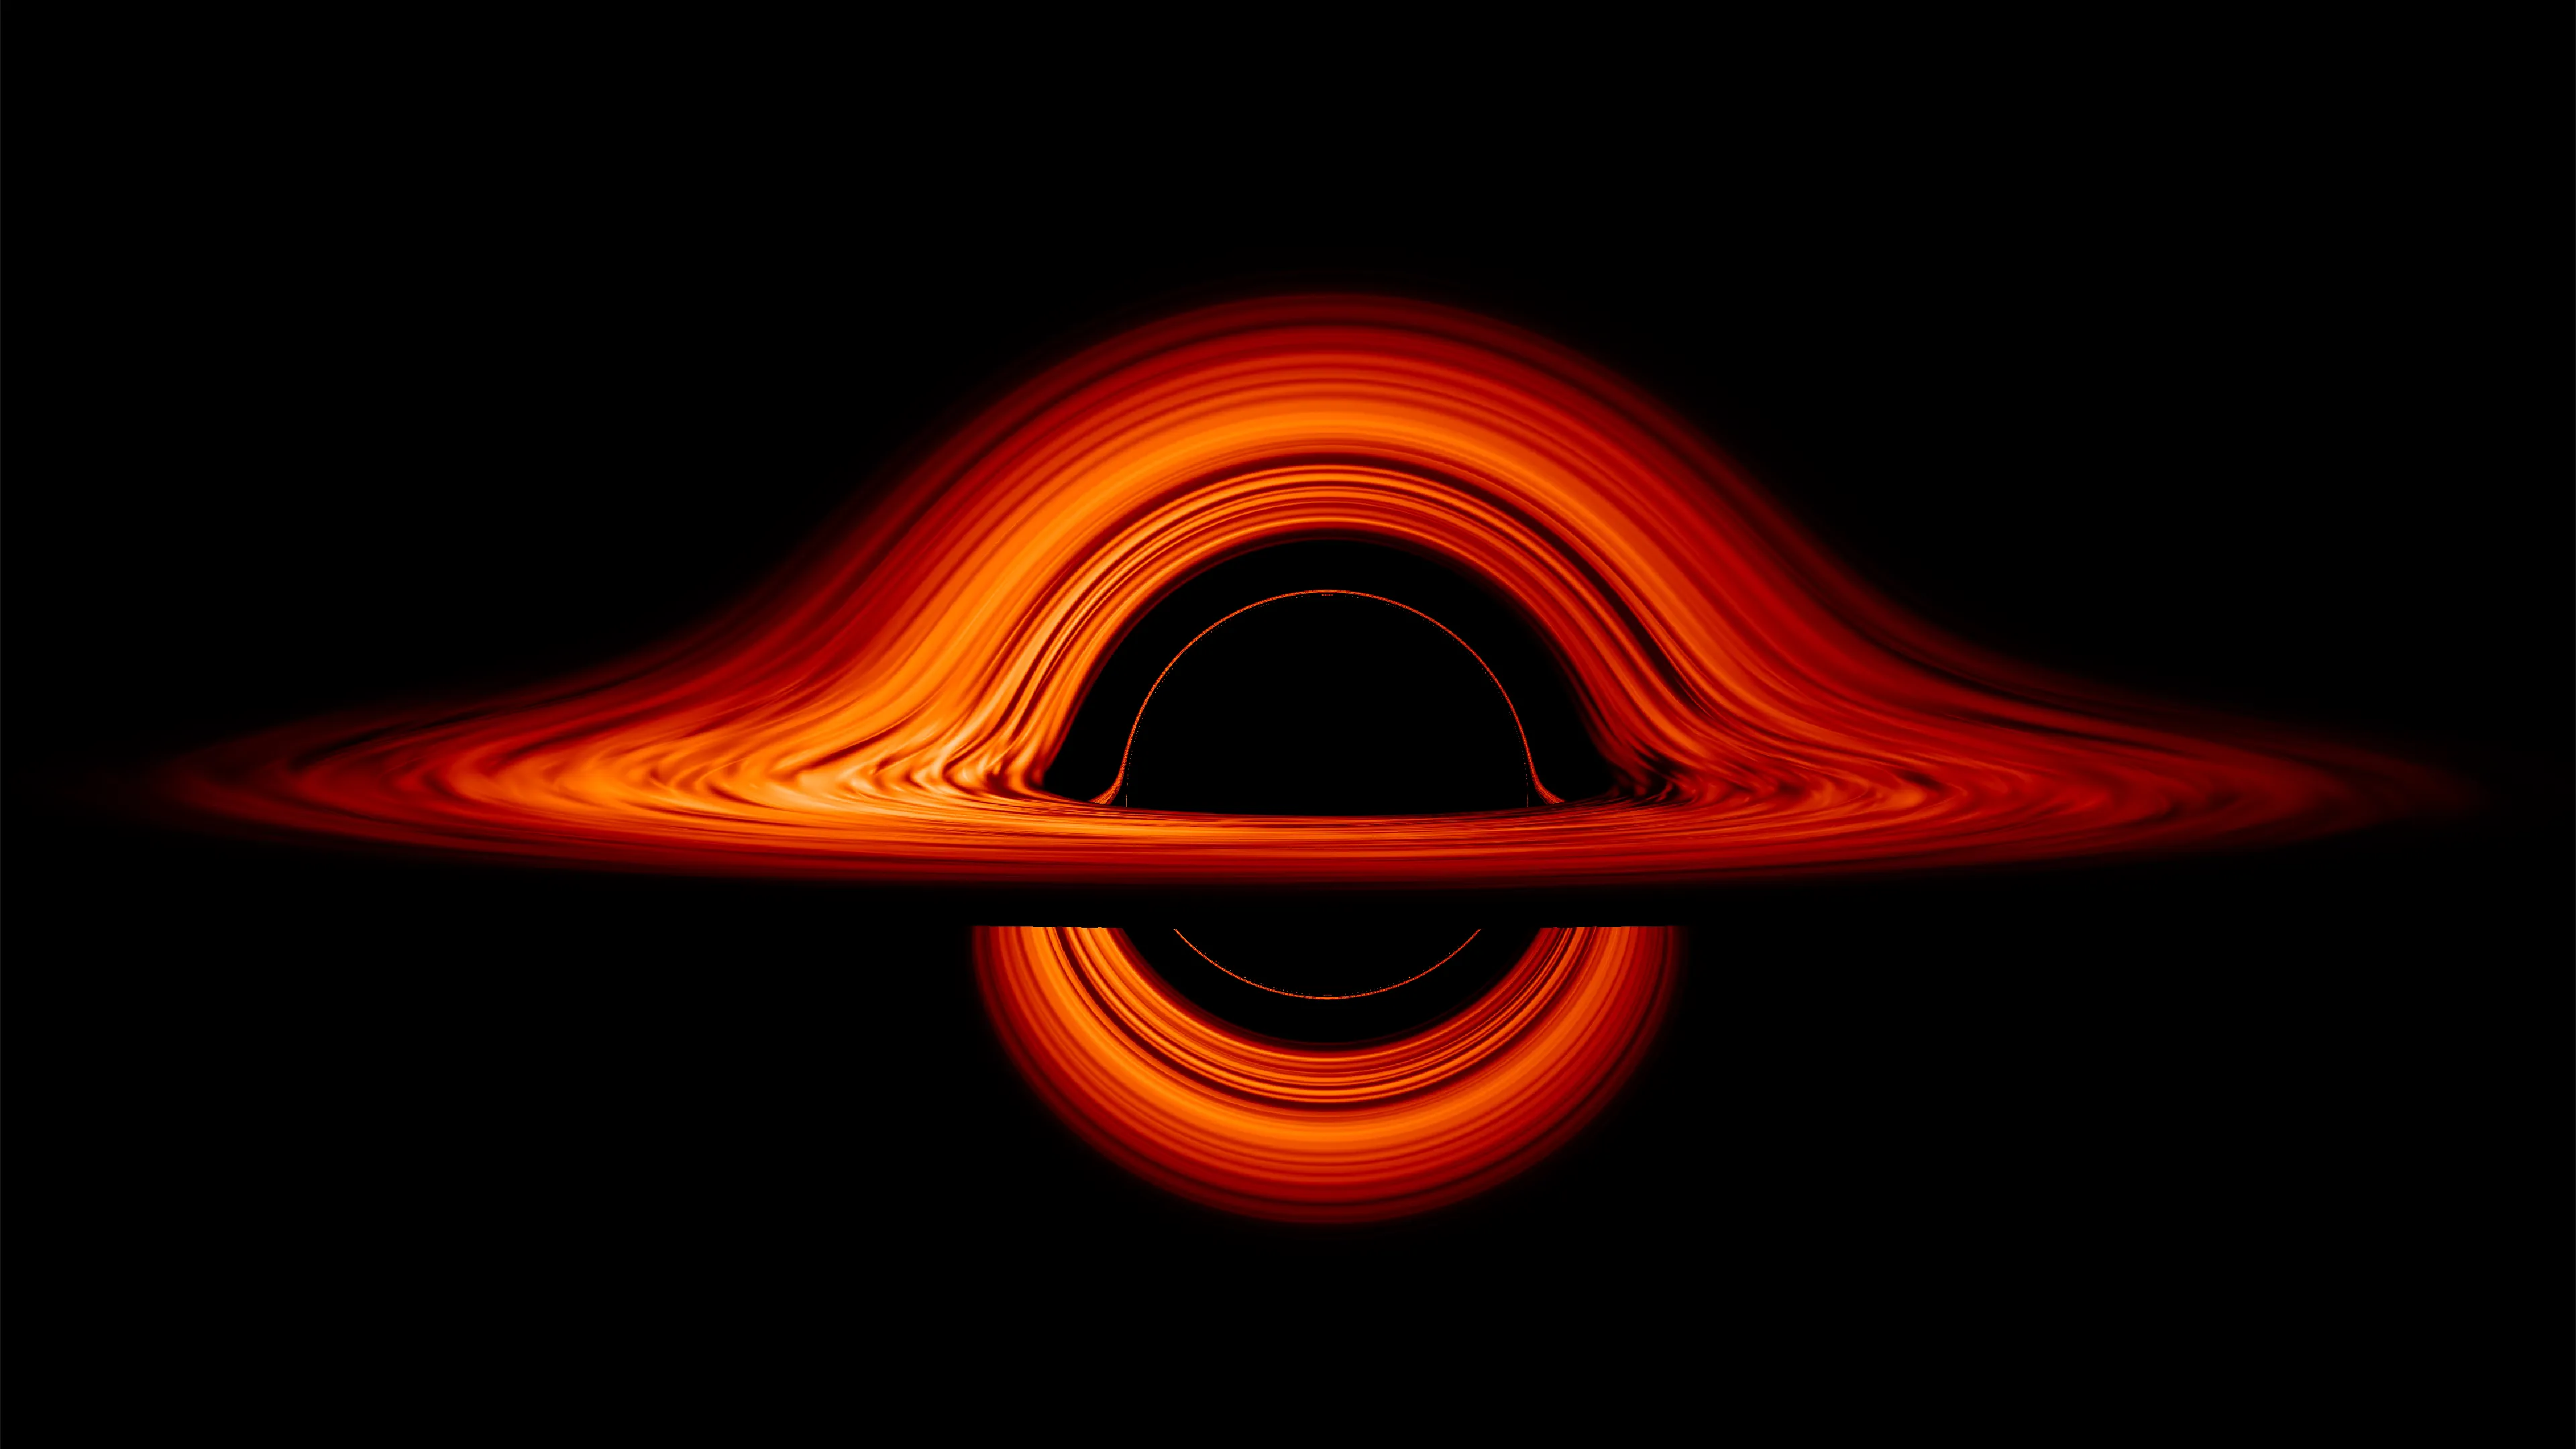 Аккреционный диск черной дыры